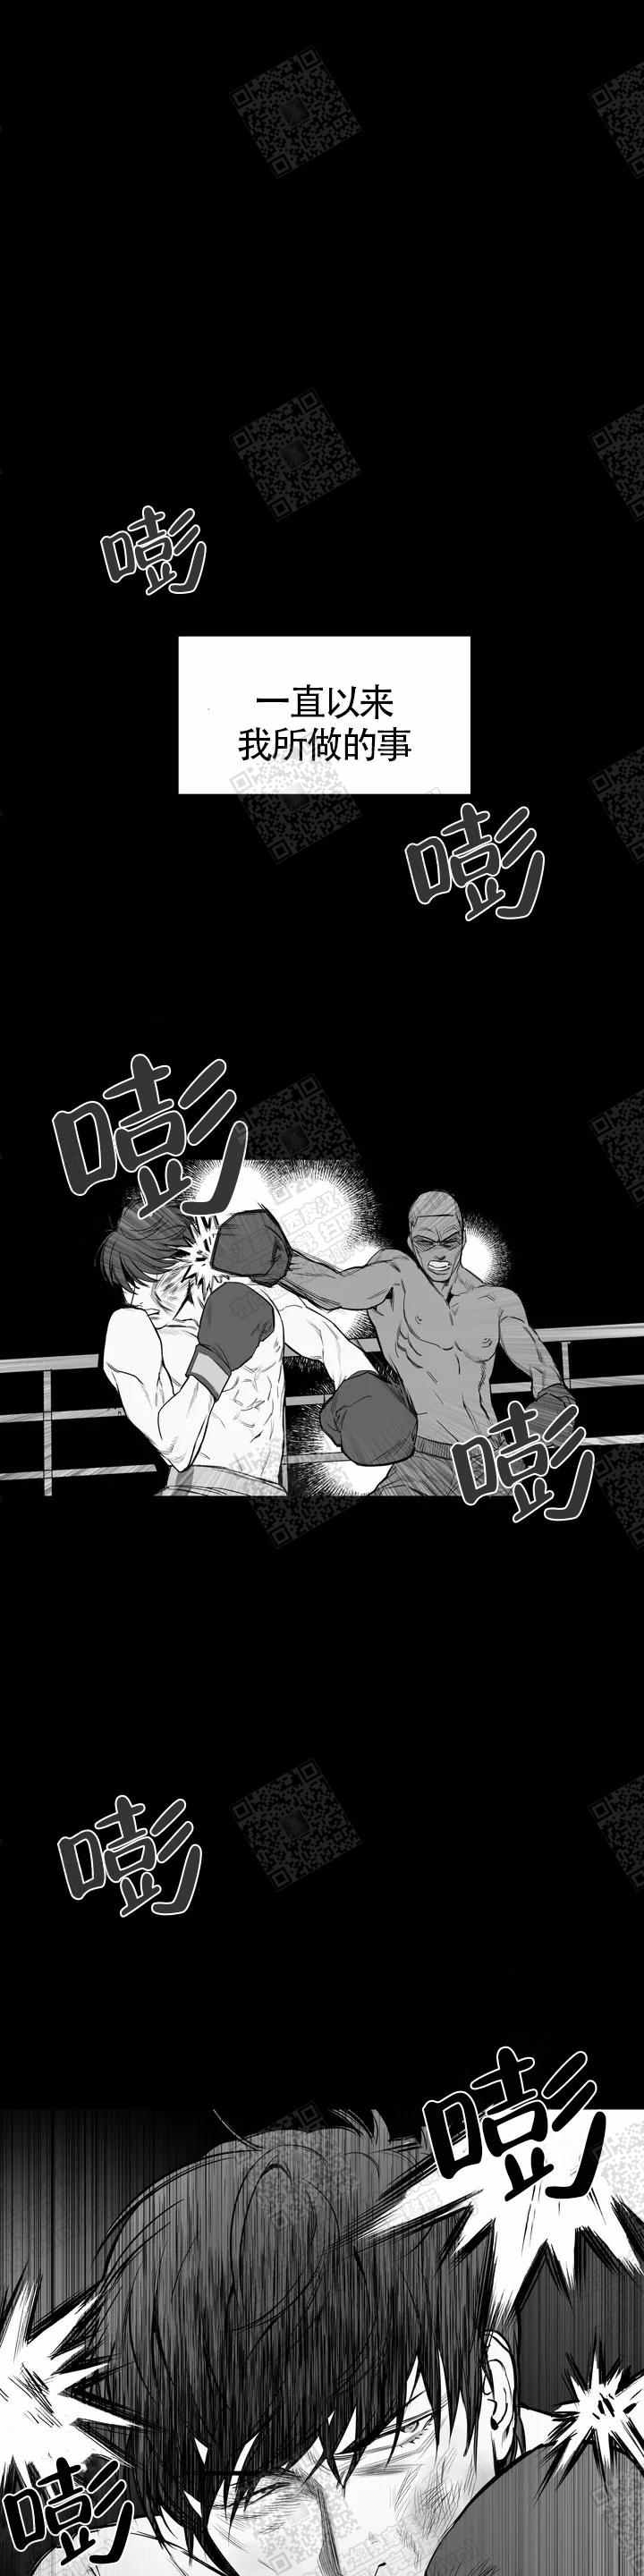 《不走路的腿》漫画：拳击手受遇上债主攻 